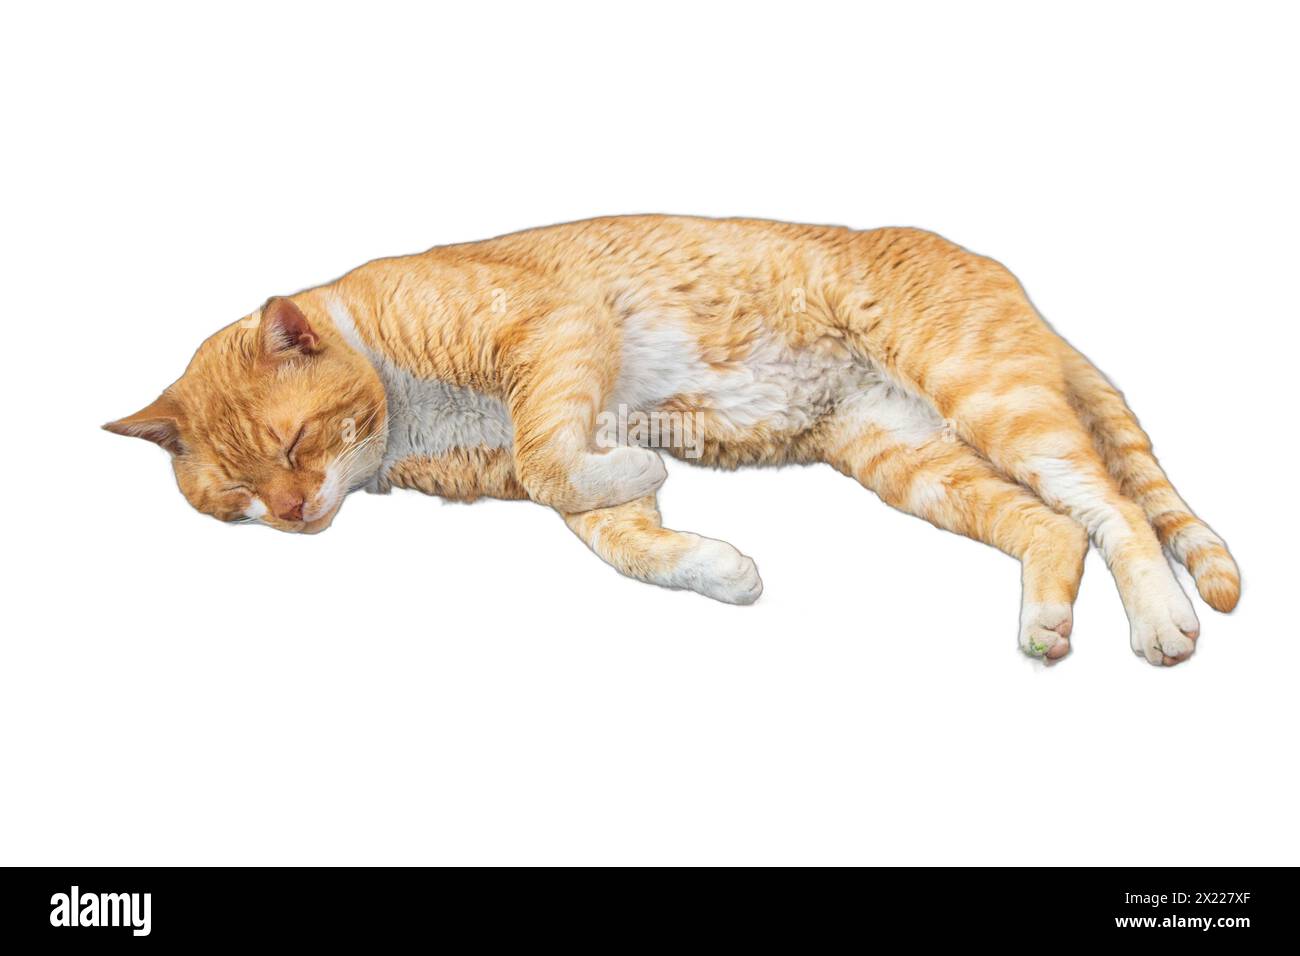 Immagini isolate di gatti sereni che si rilassano in varie pose. Perfetto per disegni legati agli animali domestici, illustrazioni per gli amanti degli animali e grafica accogliente. Foto Stock